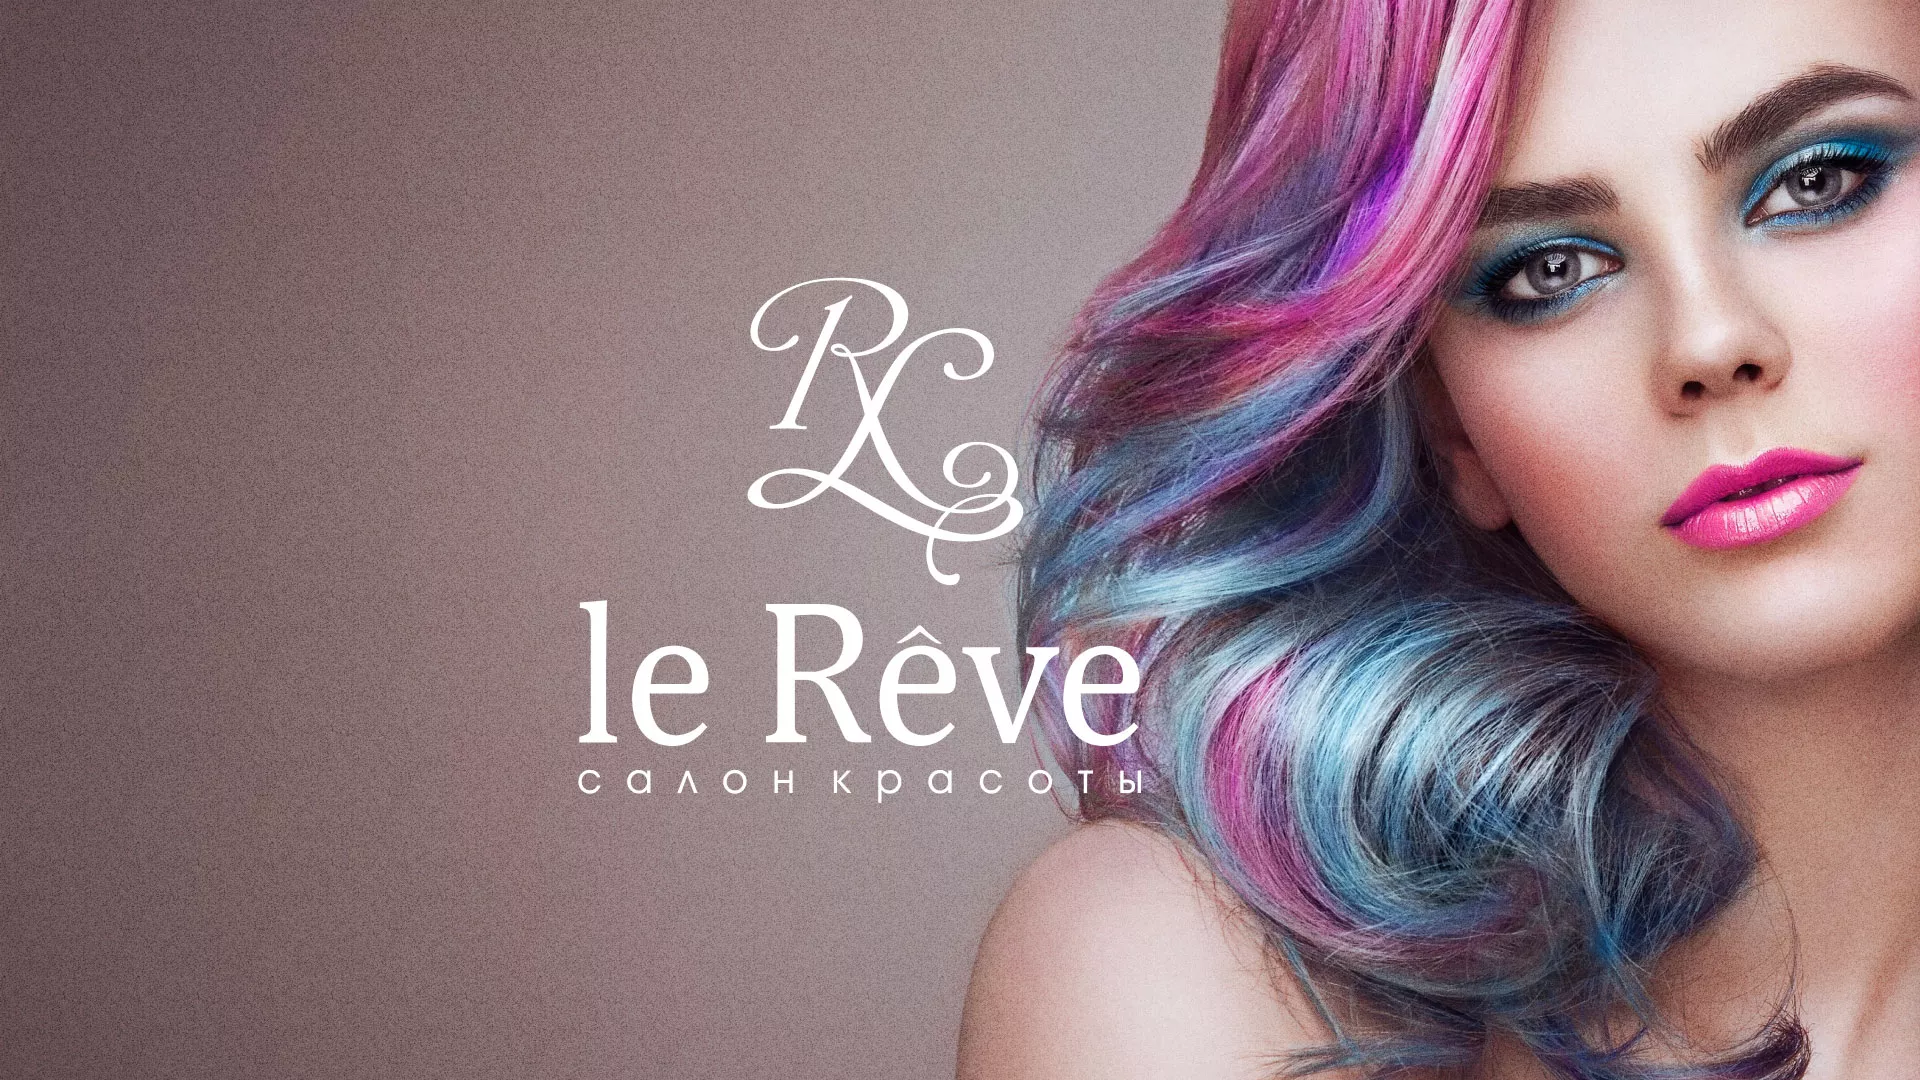 Создание сайта для салона красоты «Le Reve» в Ртищево